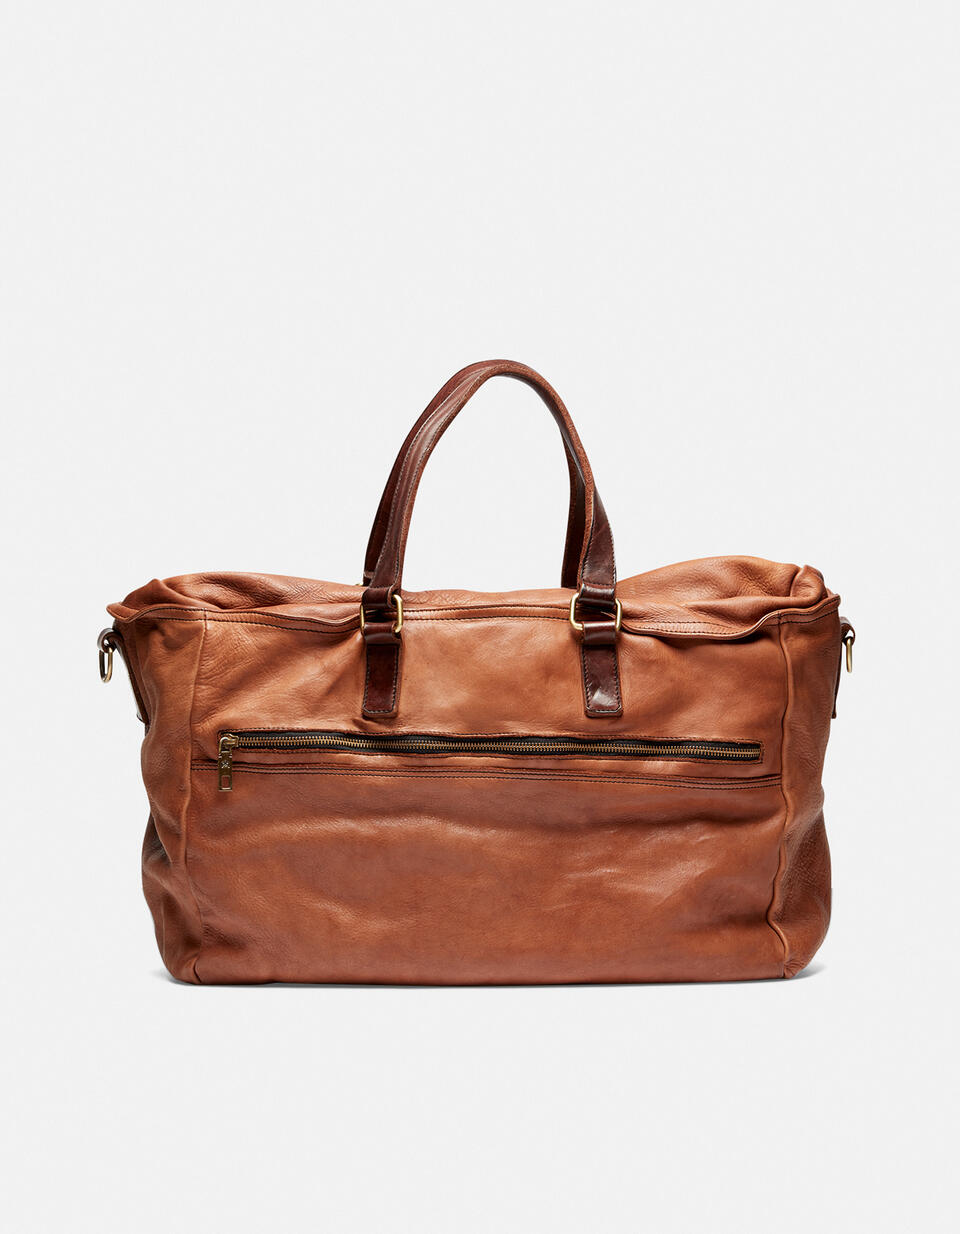 Weekender BRUCIATO  - Luggage - Travel Bags - Cuoieria Fiorentina